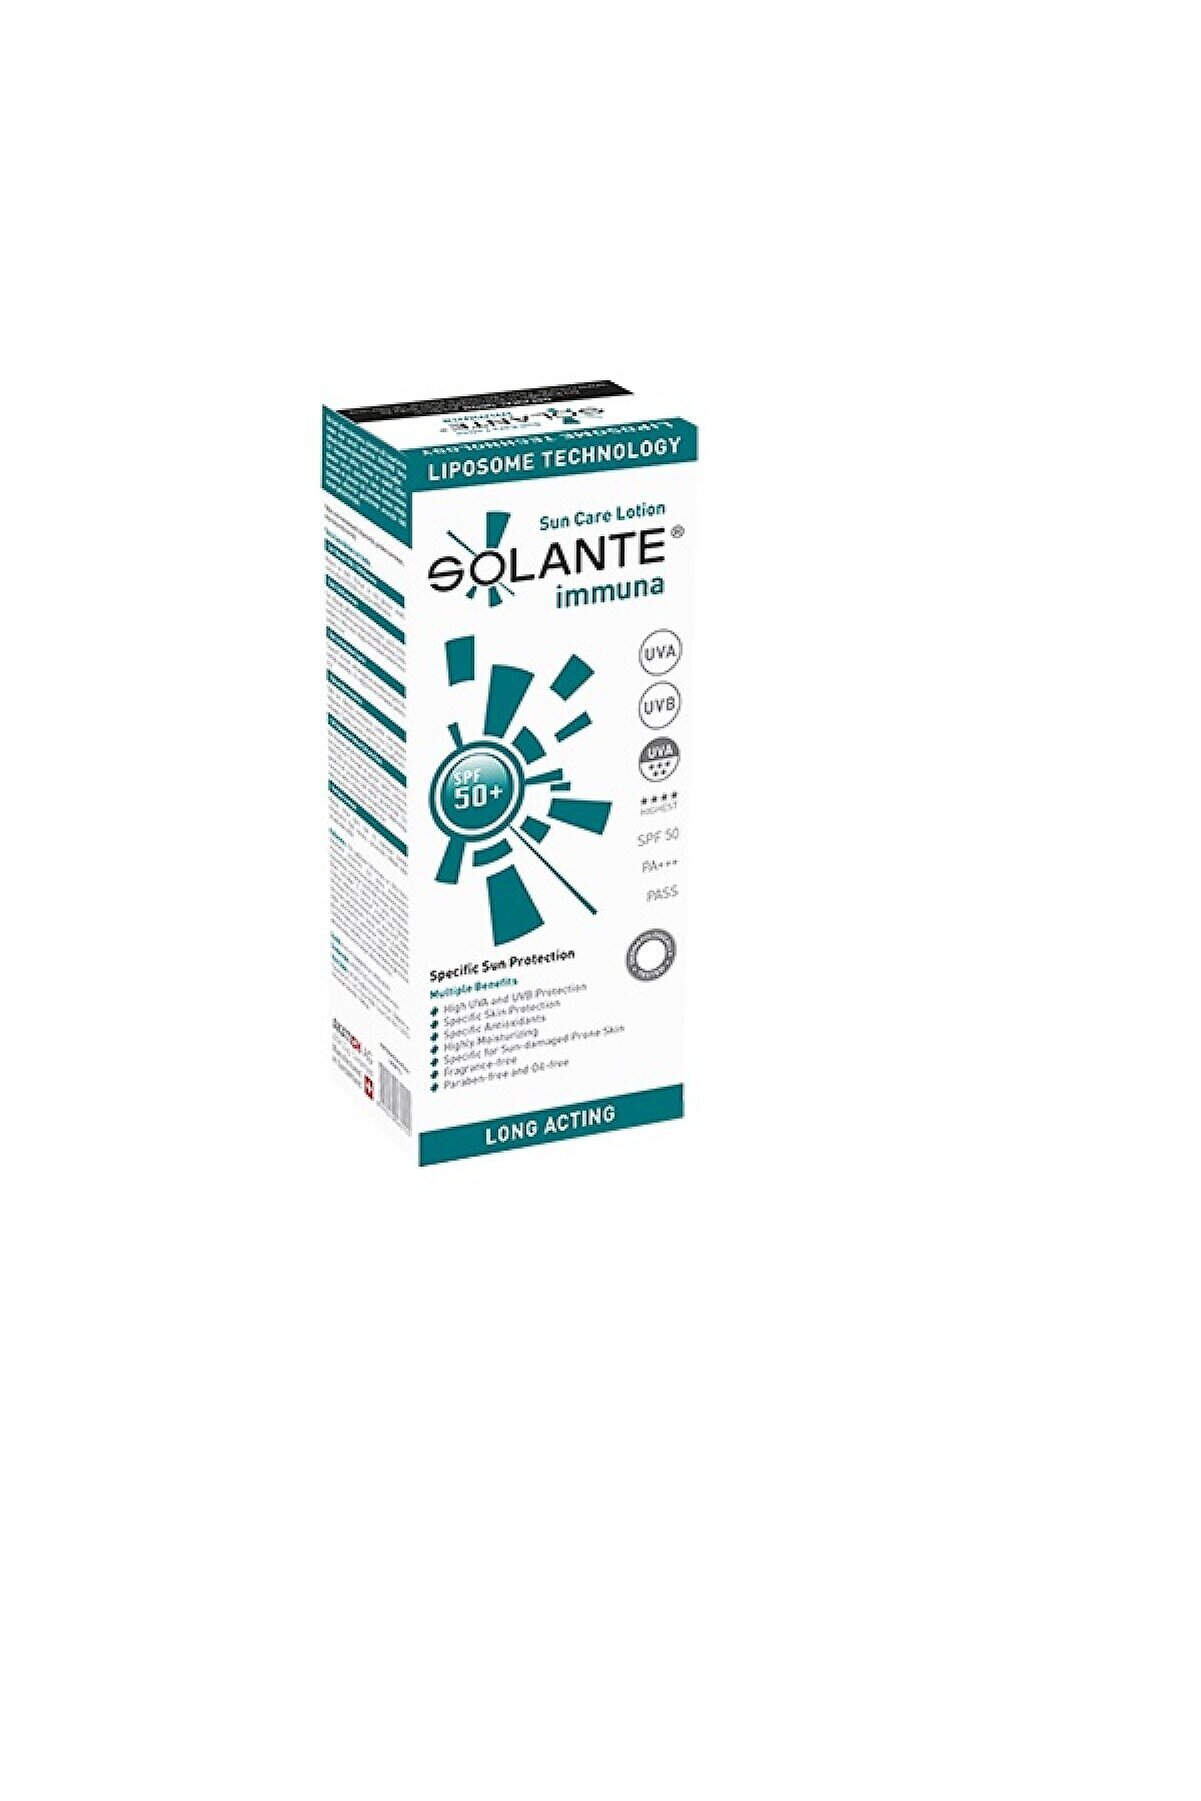 Solante Özel Antioksidan Içerikli Immuna 150 ml